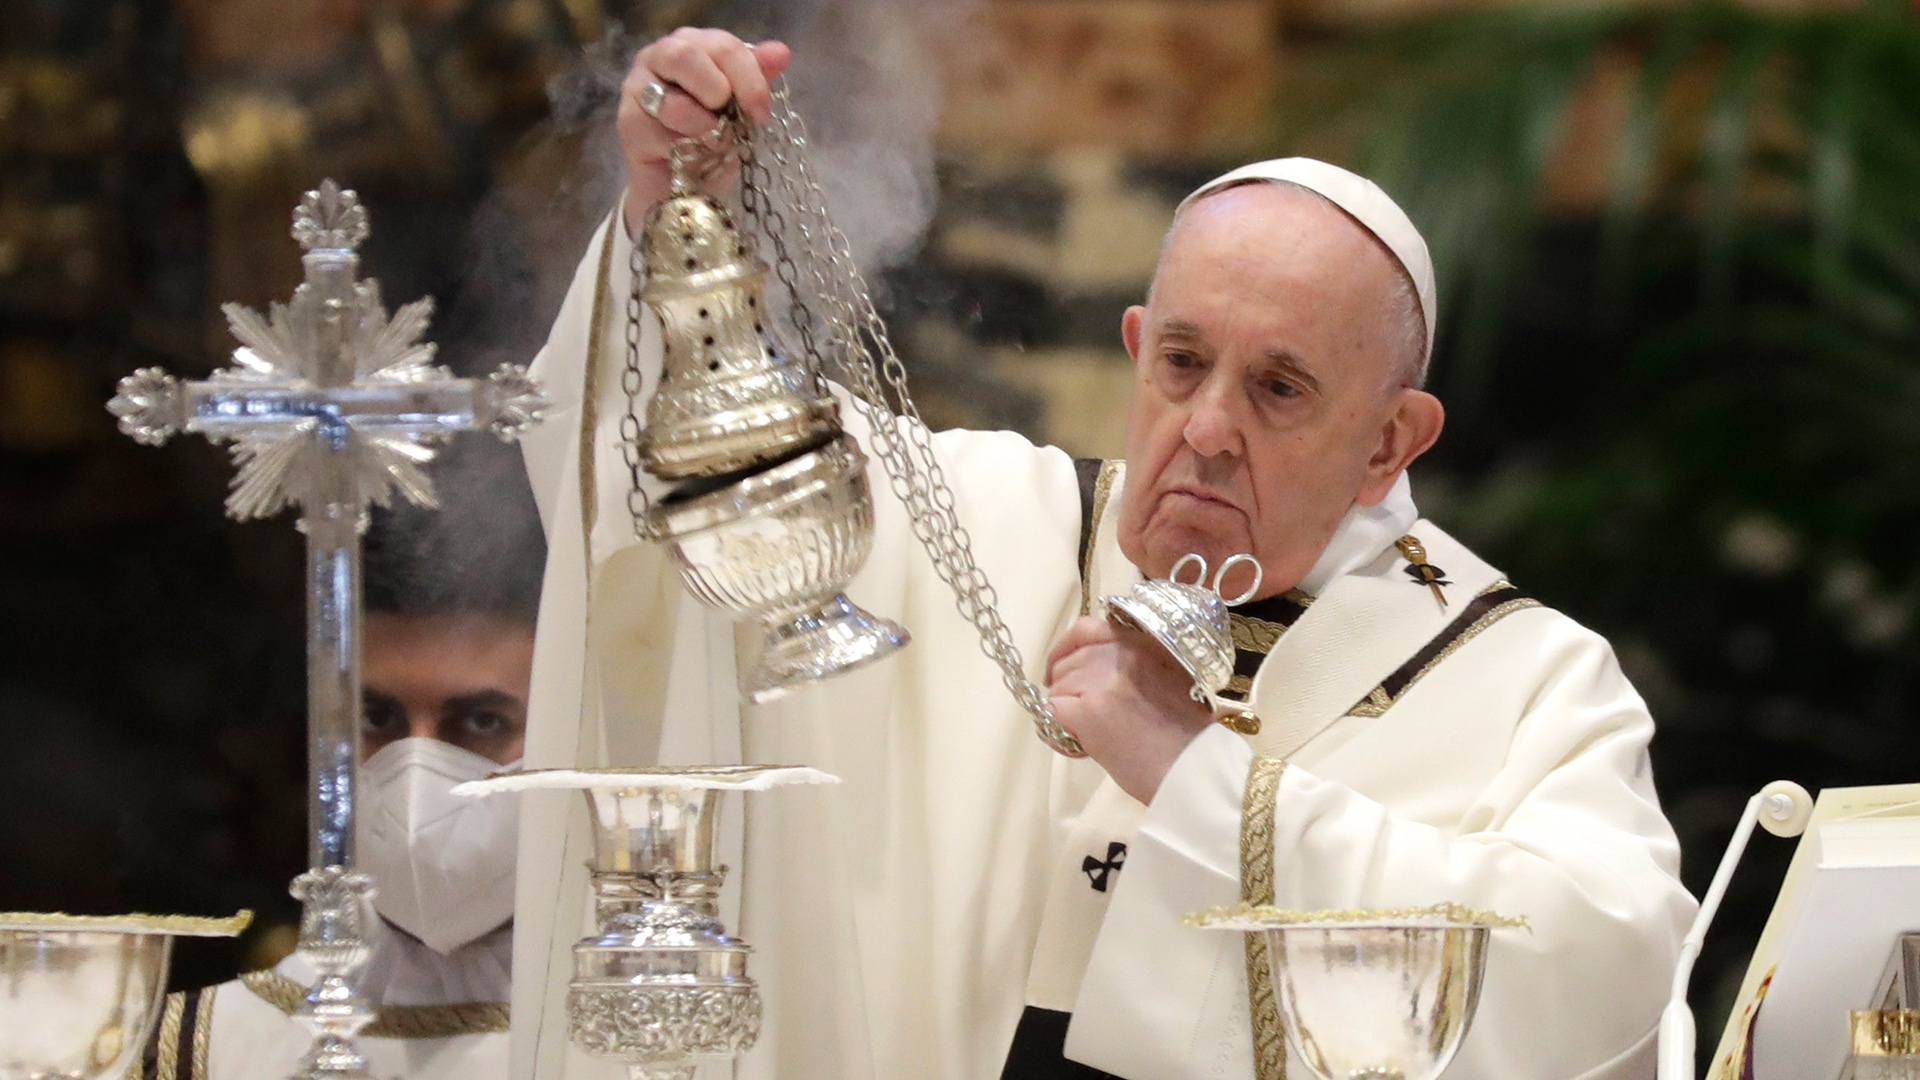 Vatikan, Vatikanstadt: Papst Franziskus während einer Chrisammesse im Petersdom.